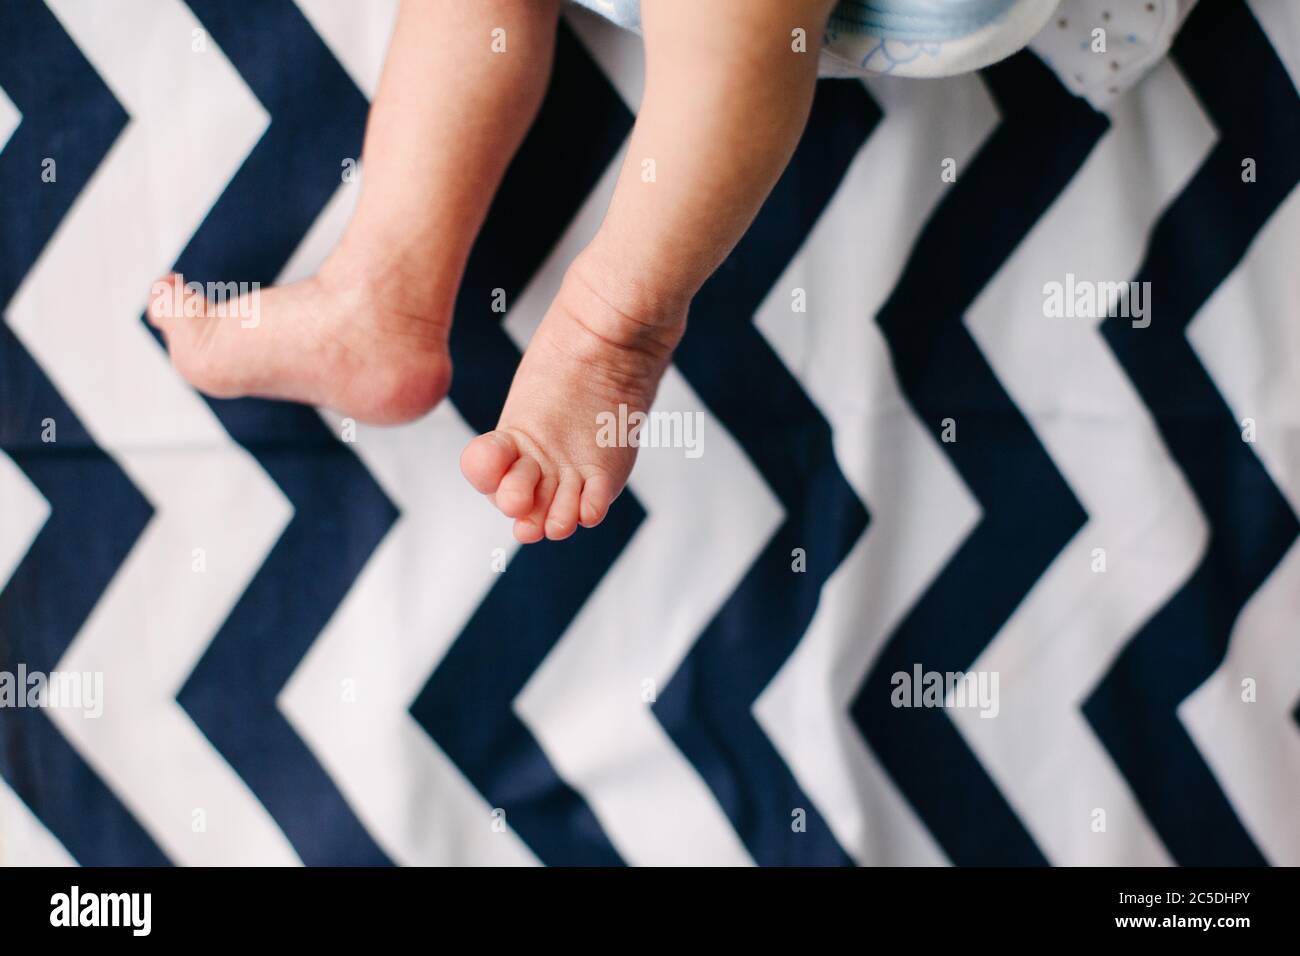 Piedi e gambe del neonato. Delicato e stropicciato. Piedi deboli e scrawny. Foto Stock